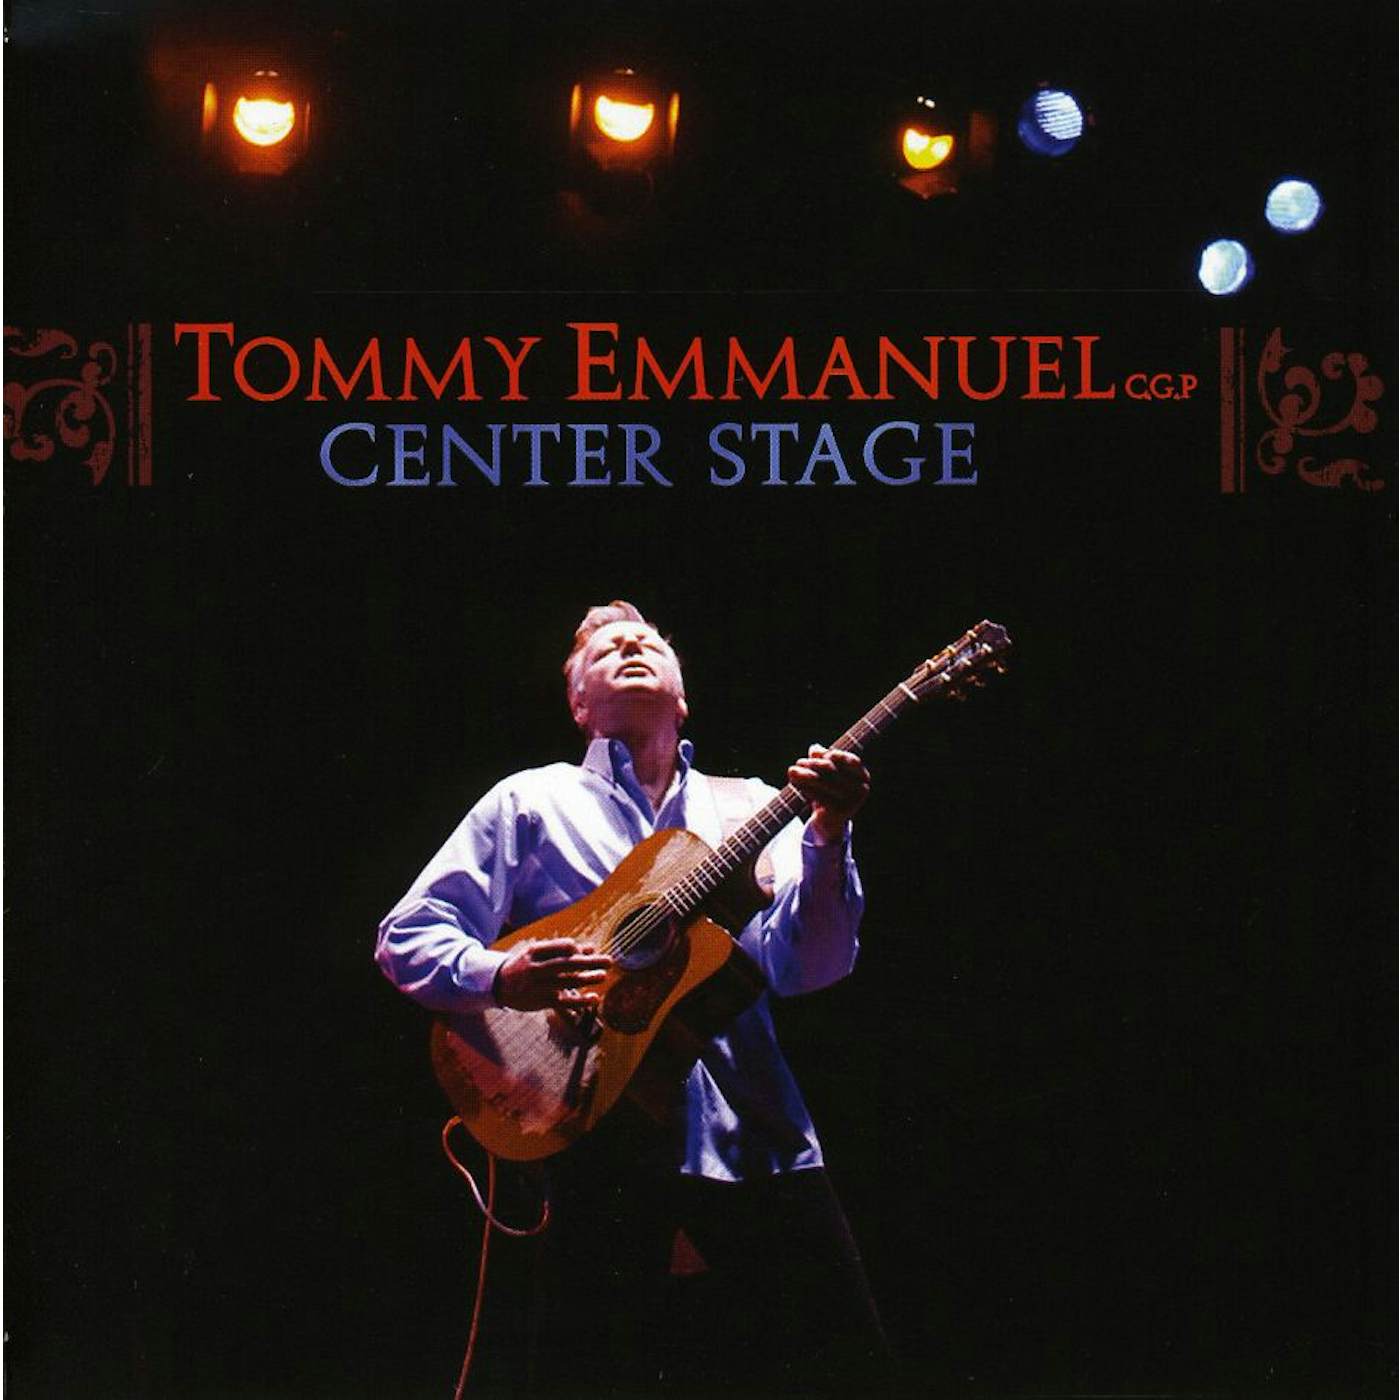 Tommy Emmanuel CENTRE STAGE CD